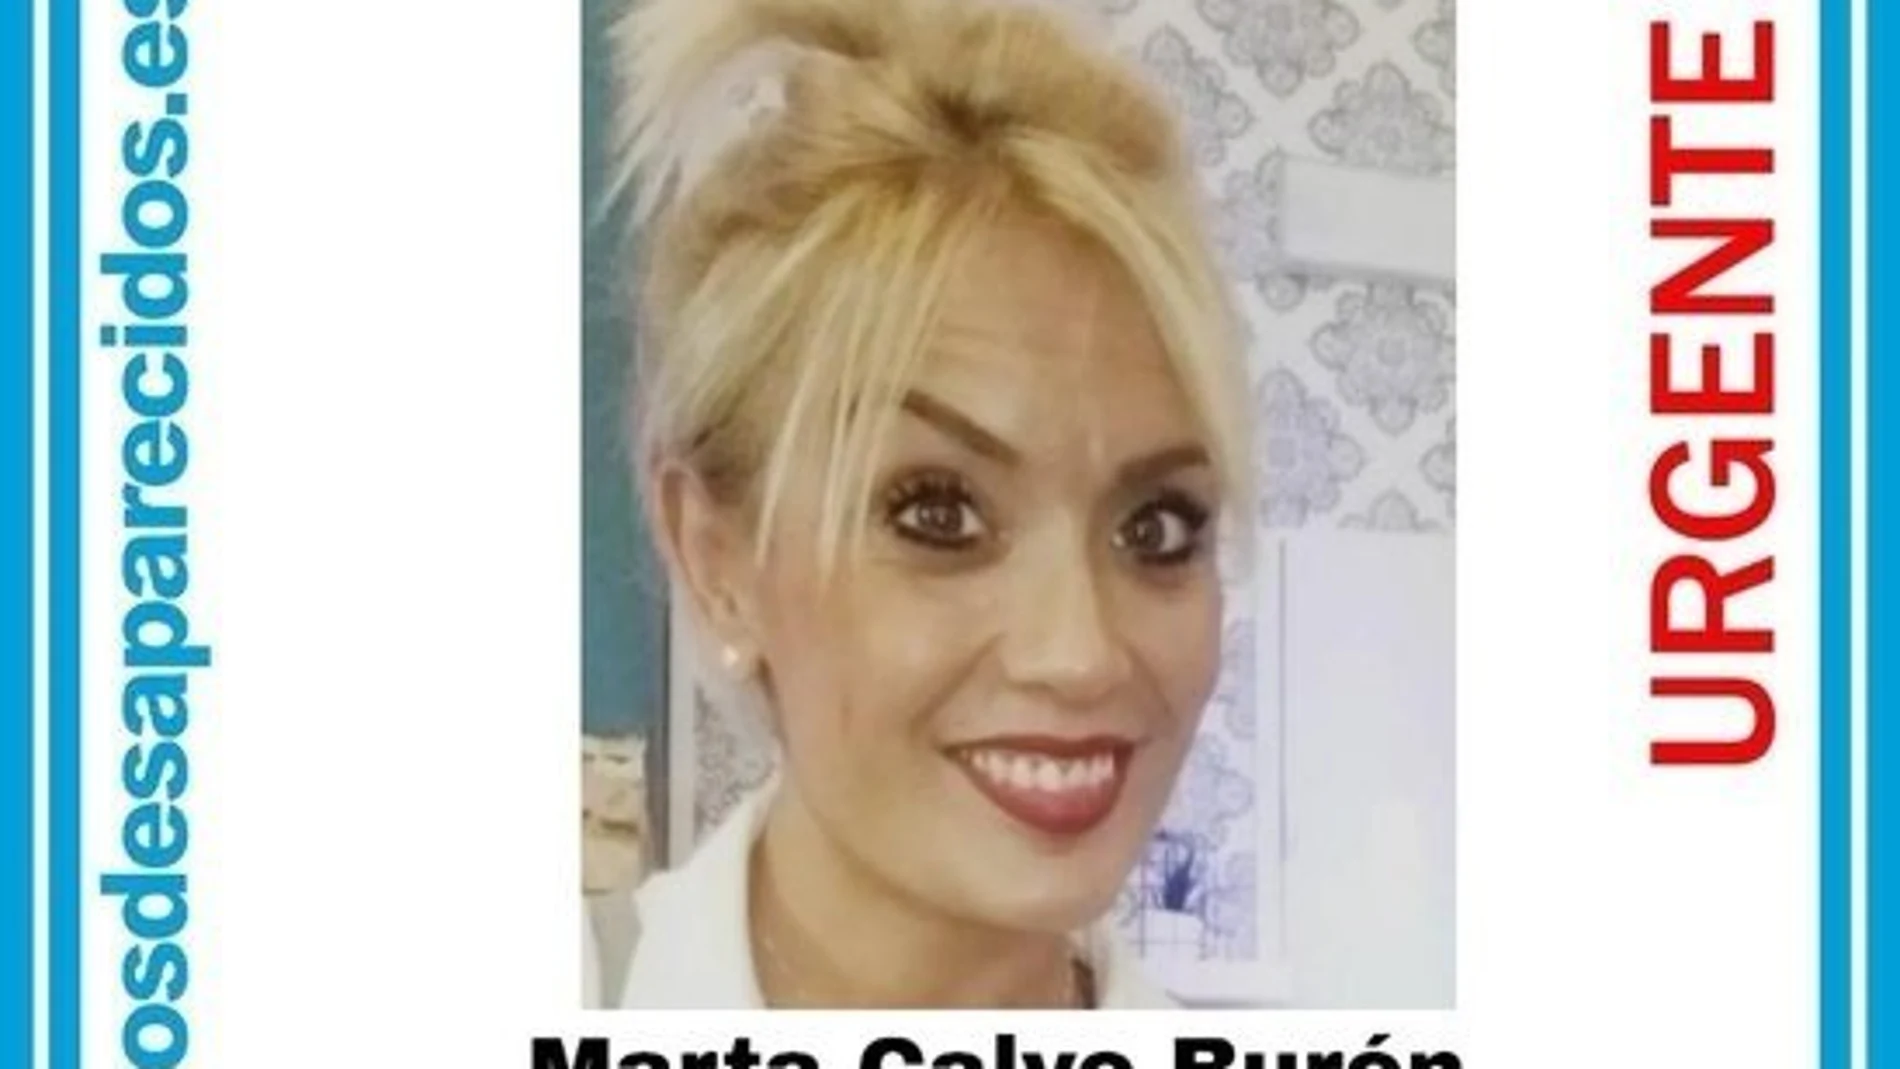 Cartel emitido tras la desaparición de Marta Calvo en noviembre de 2019